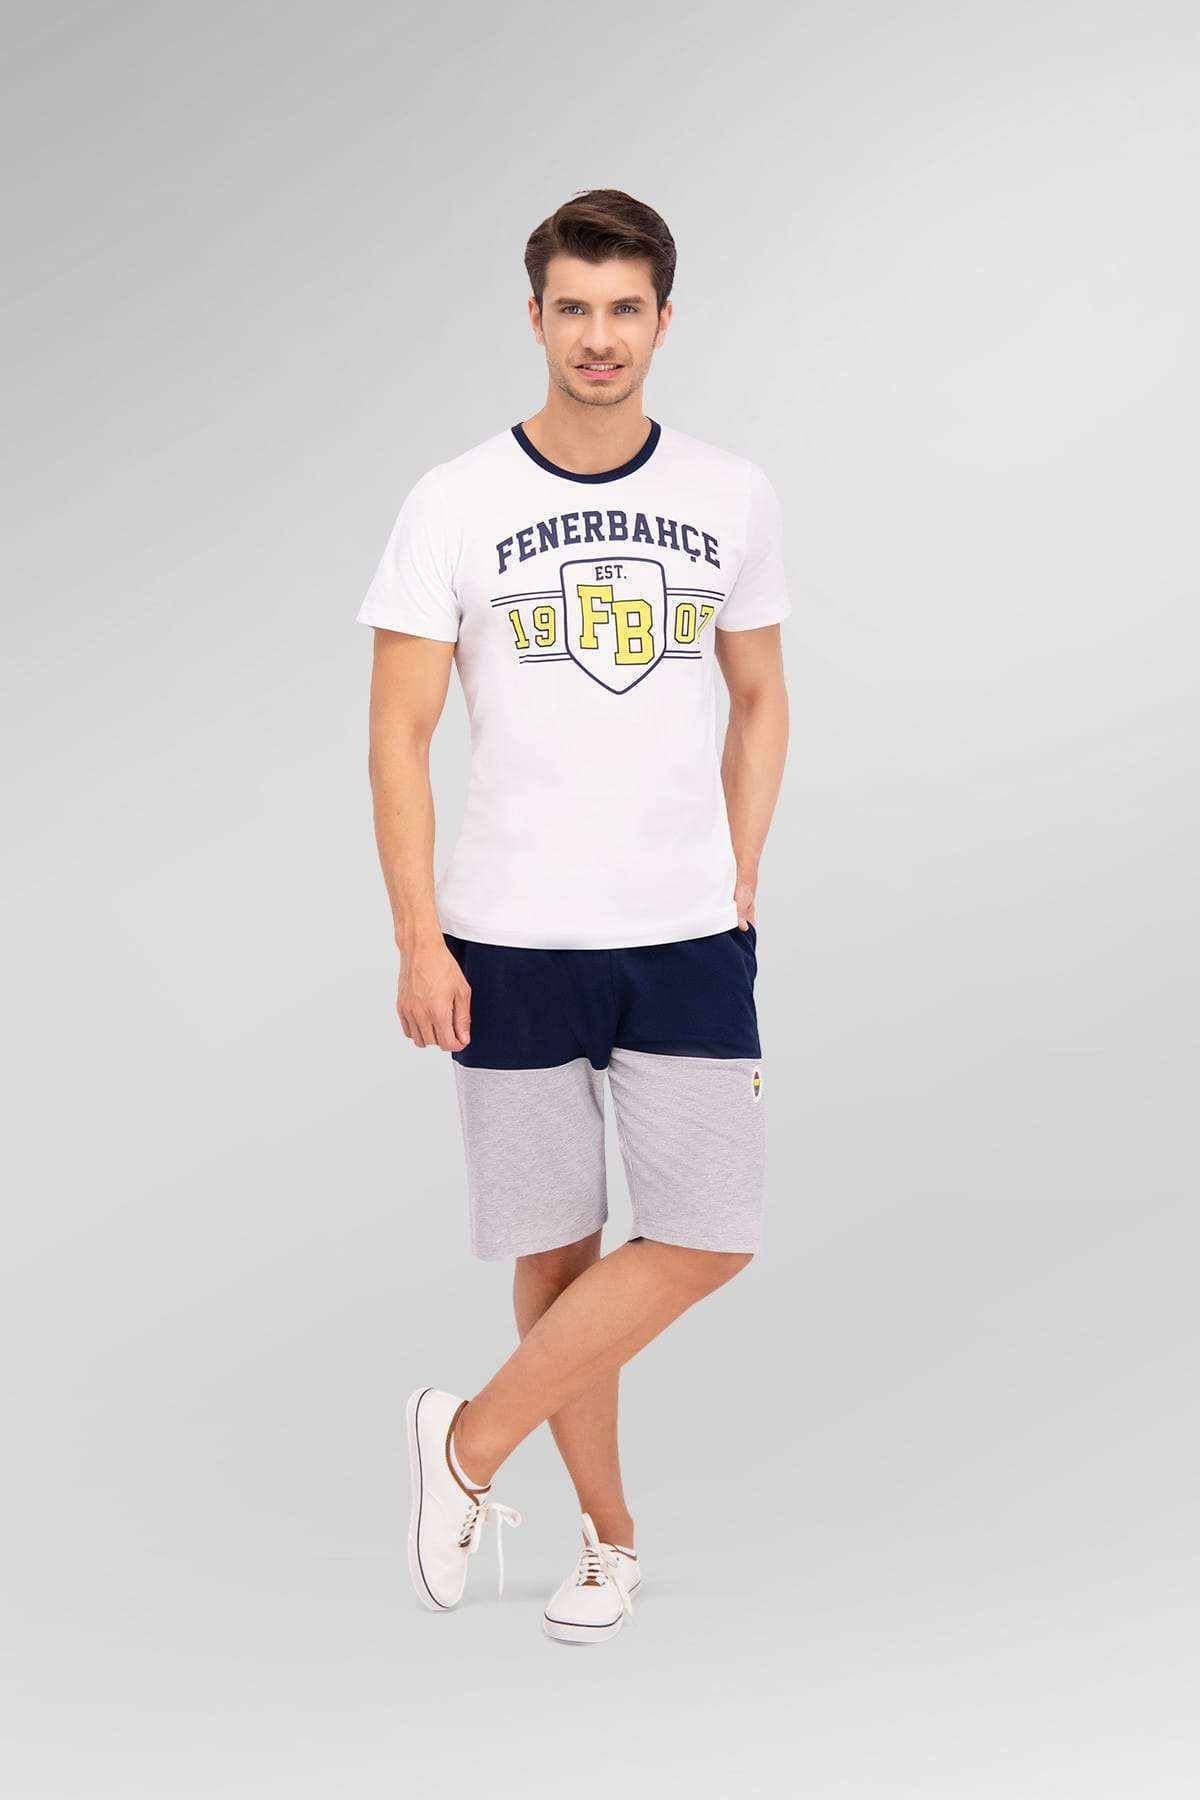 Fenerbahçe Lisanslı Beyaz Erkek Bermuda Takım